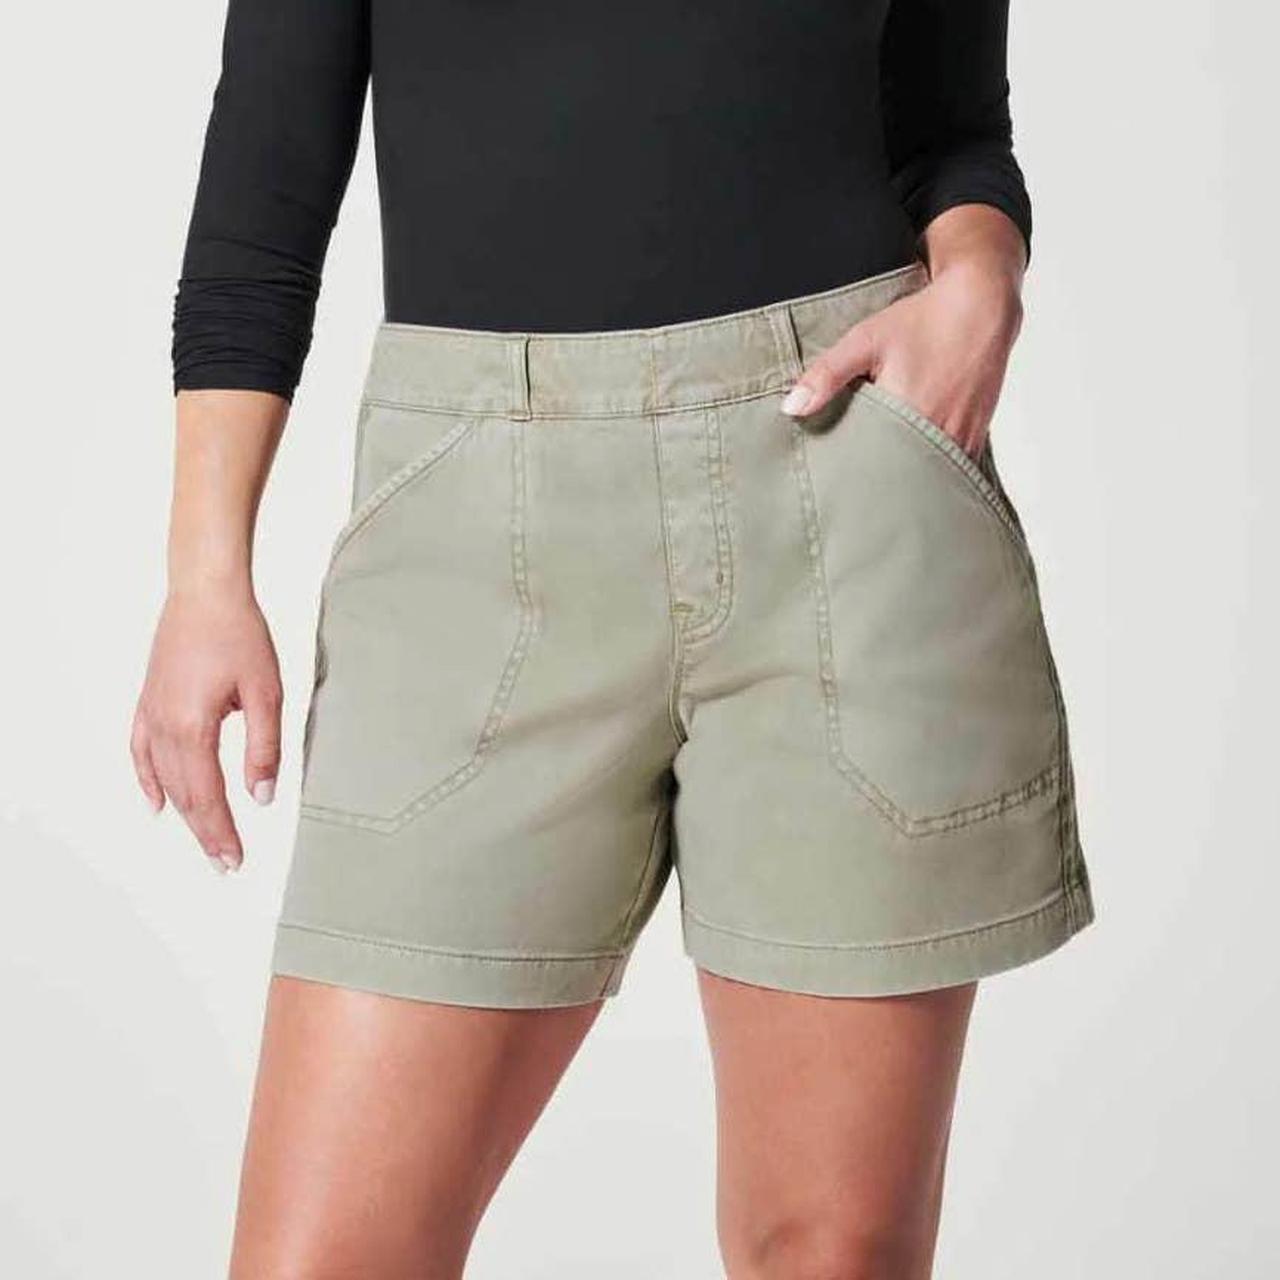 Spanx shorts stretch twill Size: XL New with - Depop